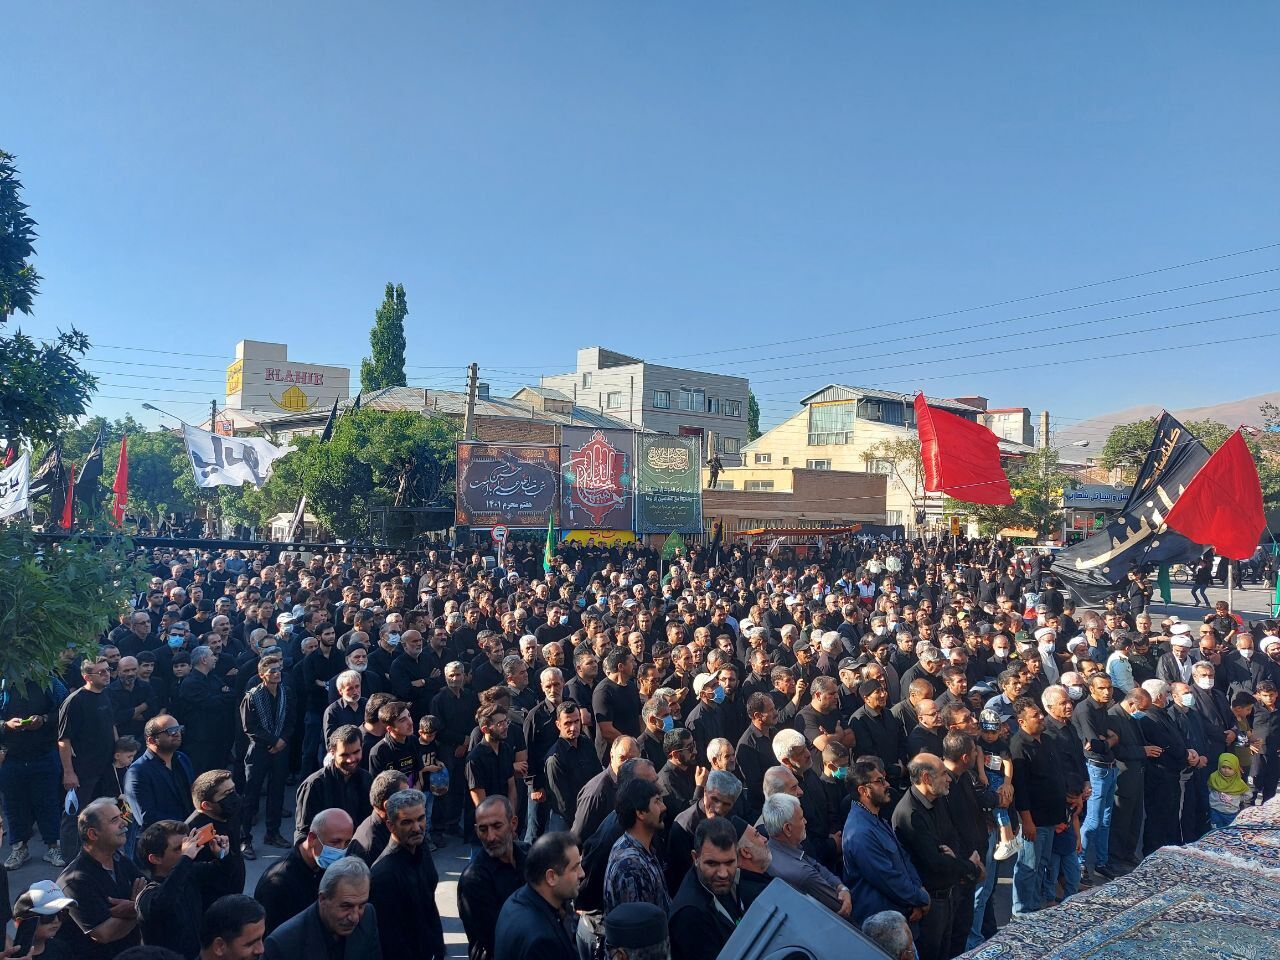 اجتماع بزرگ عزاداران حسینی در خلخال برگزار شد